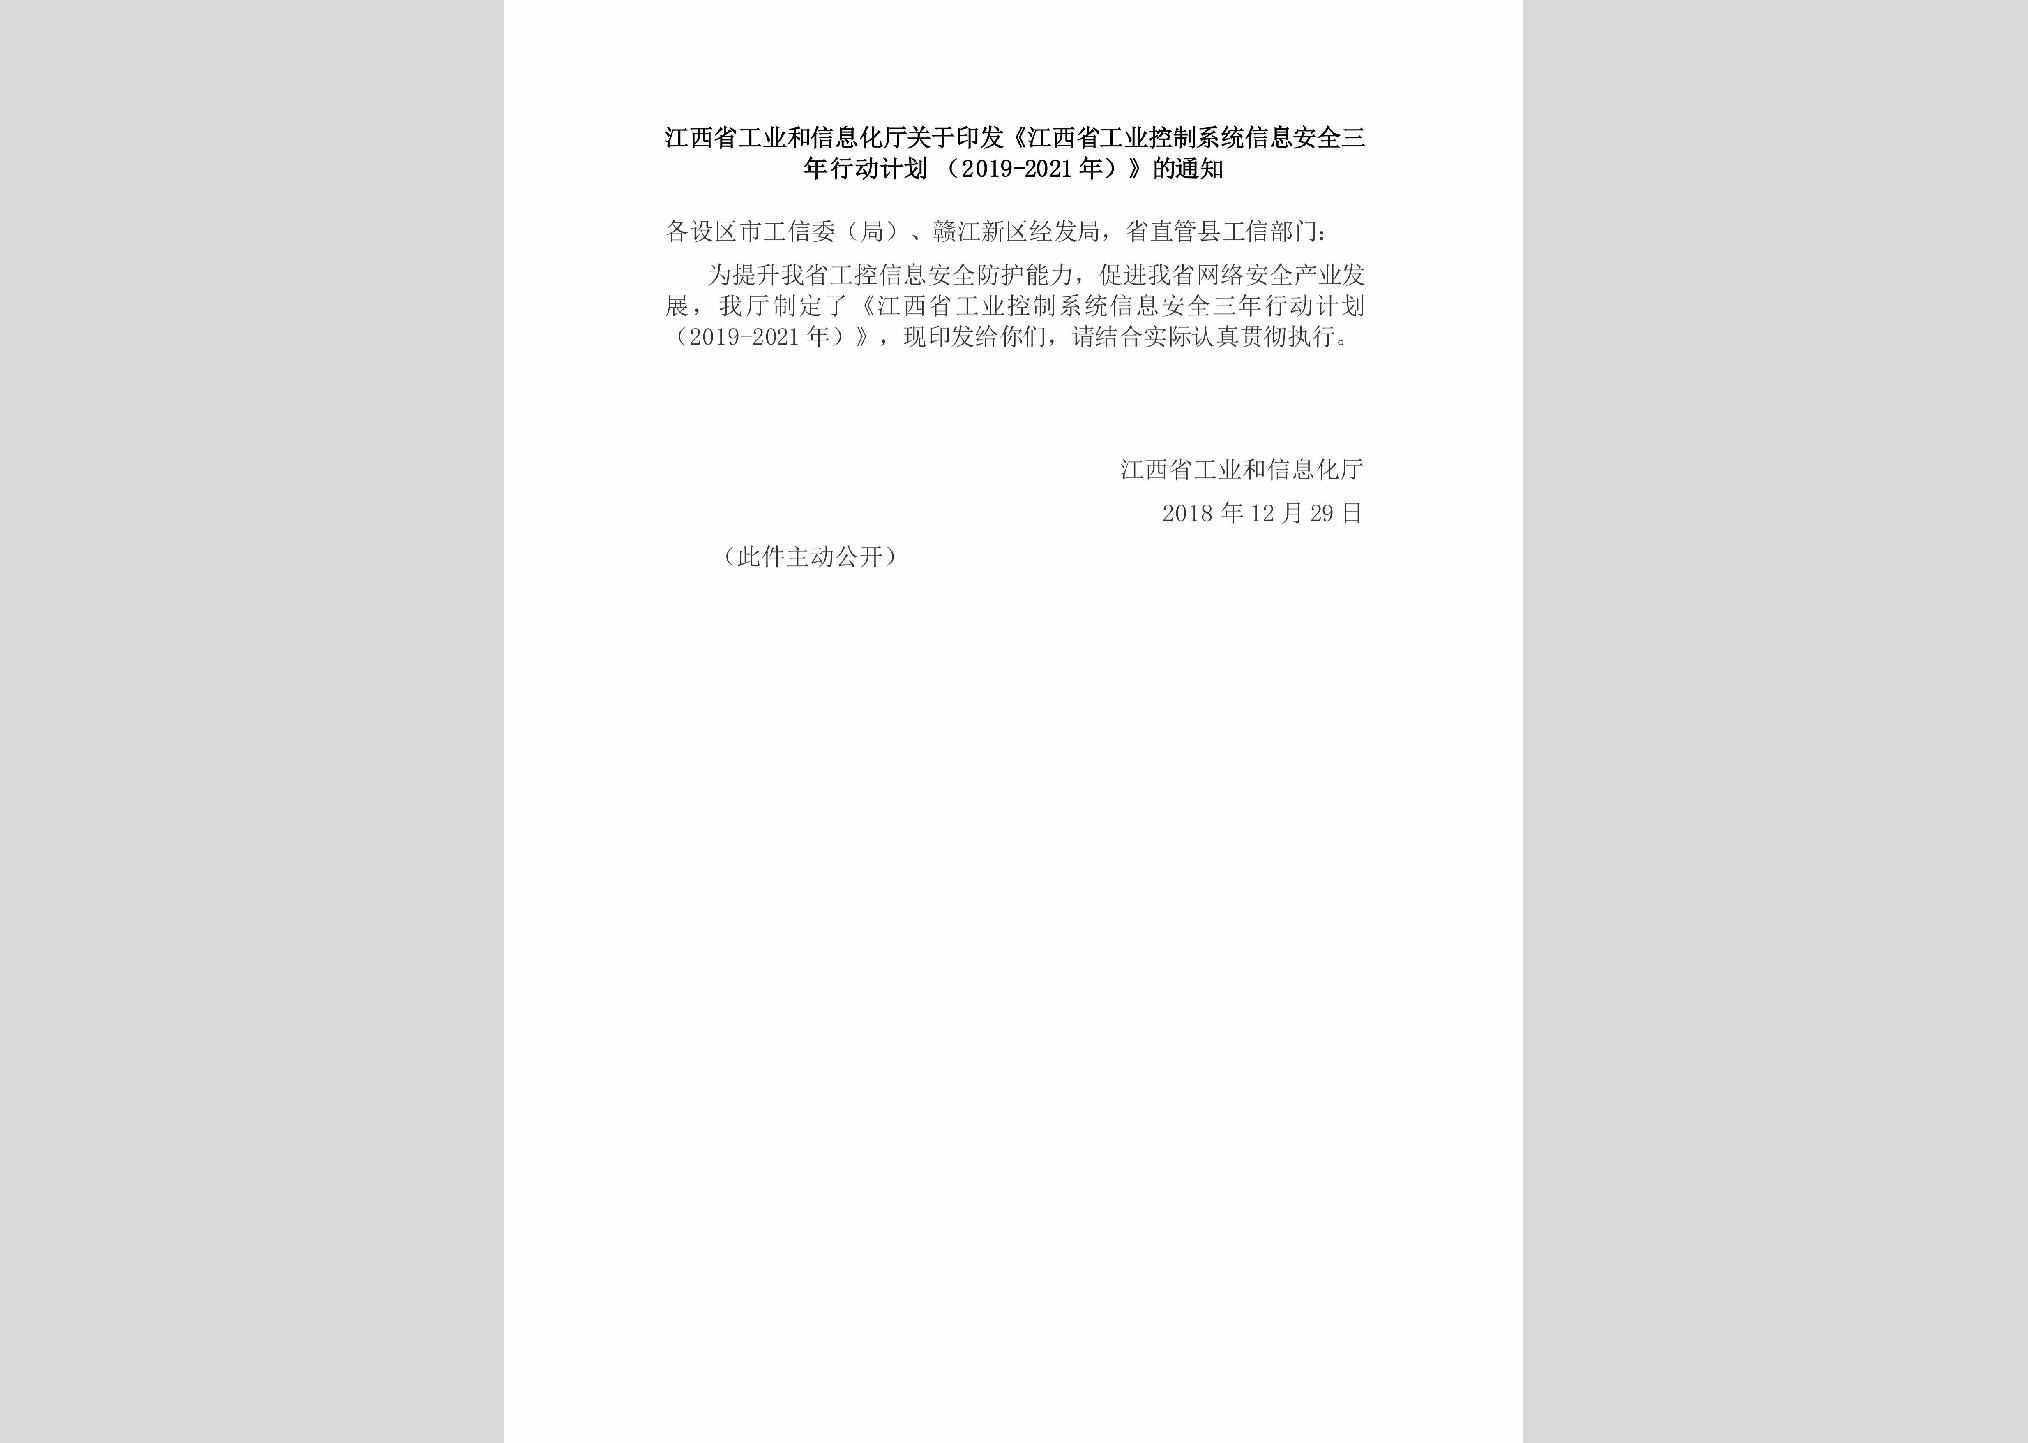 赣工信信安字[2018]688号：江西省工业和信息化厅关于印发《江西省工业控制系统信息安全三年行动计划（2019-2021年）》的通知